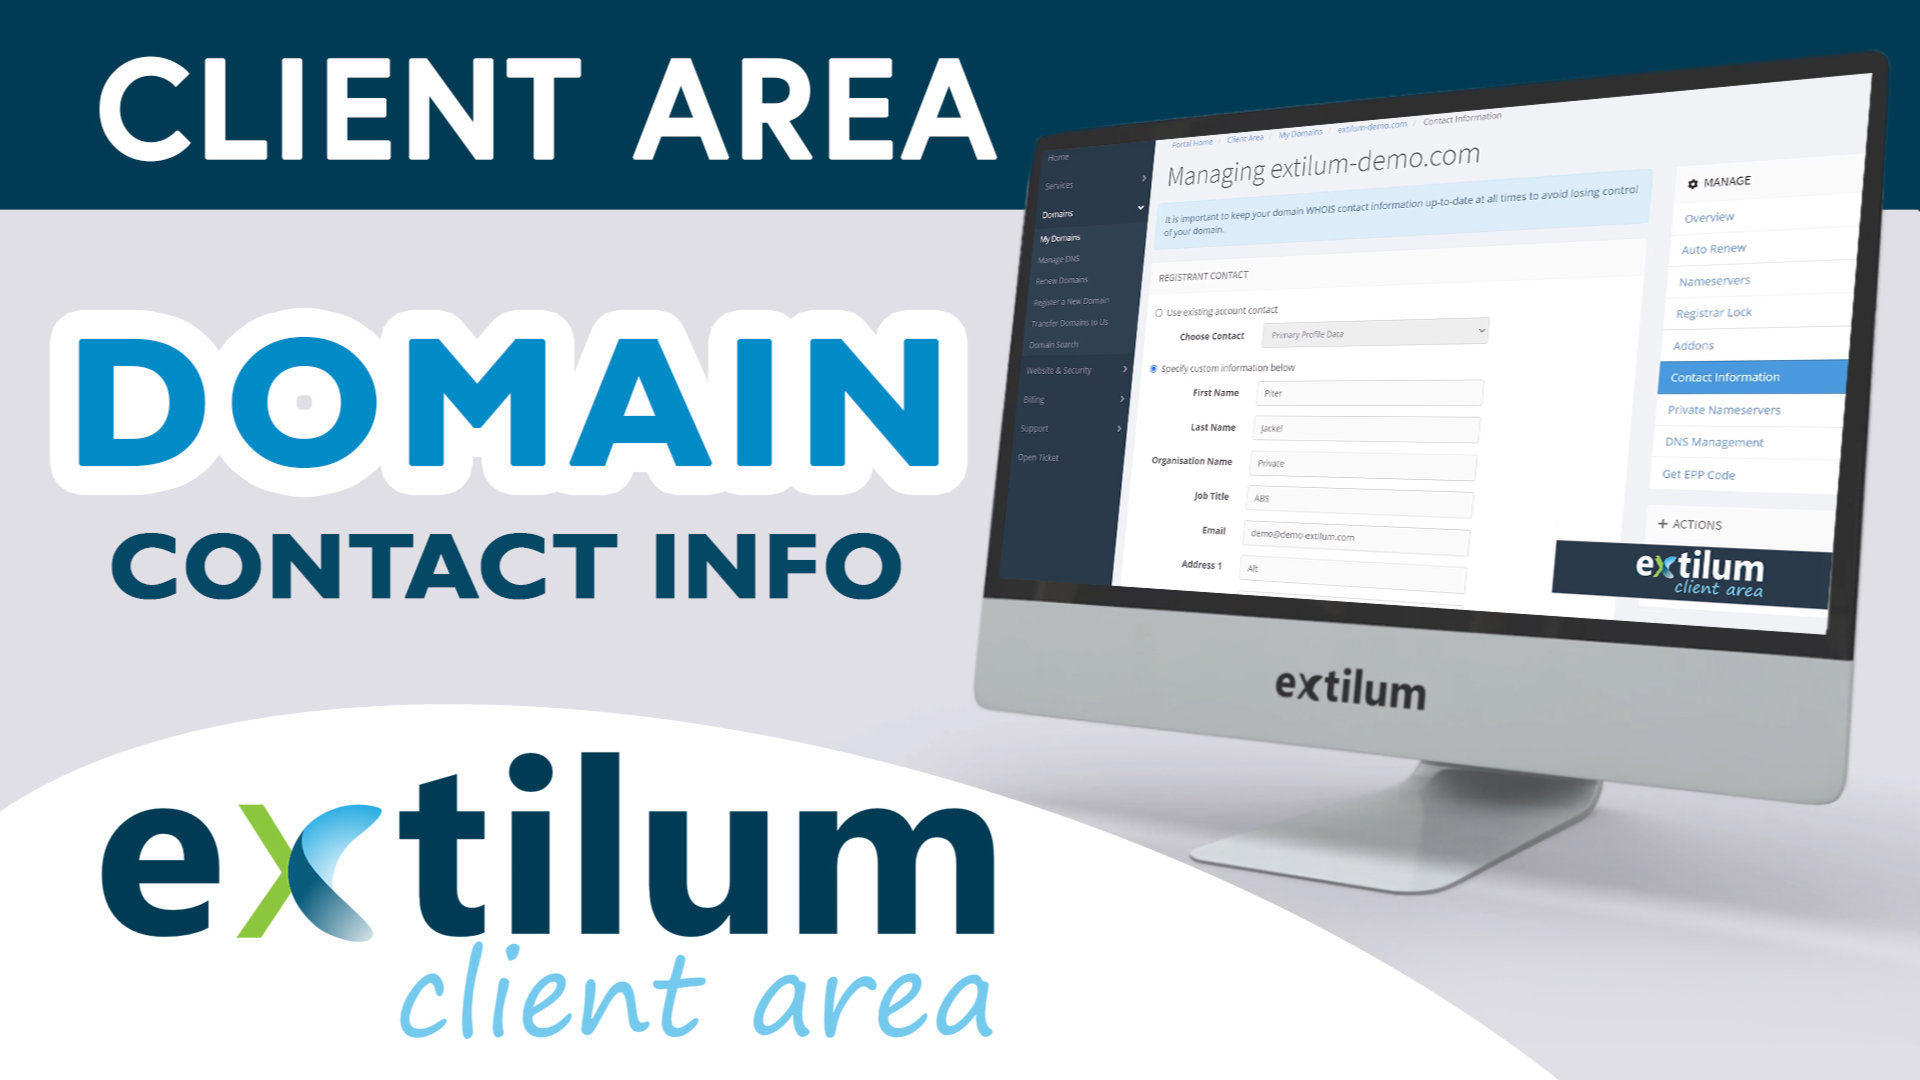 Extilum Client Area Domain Contact Info